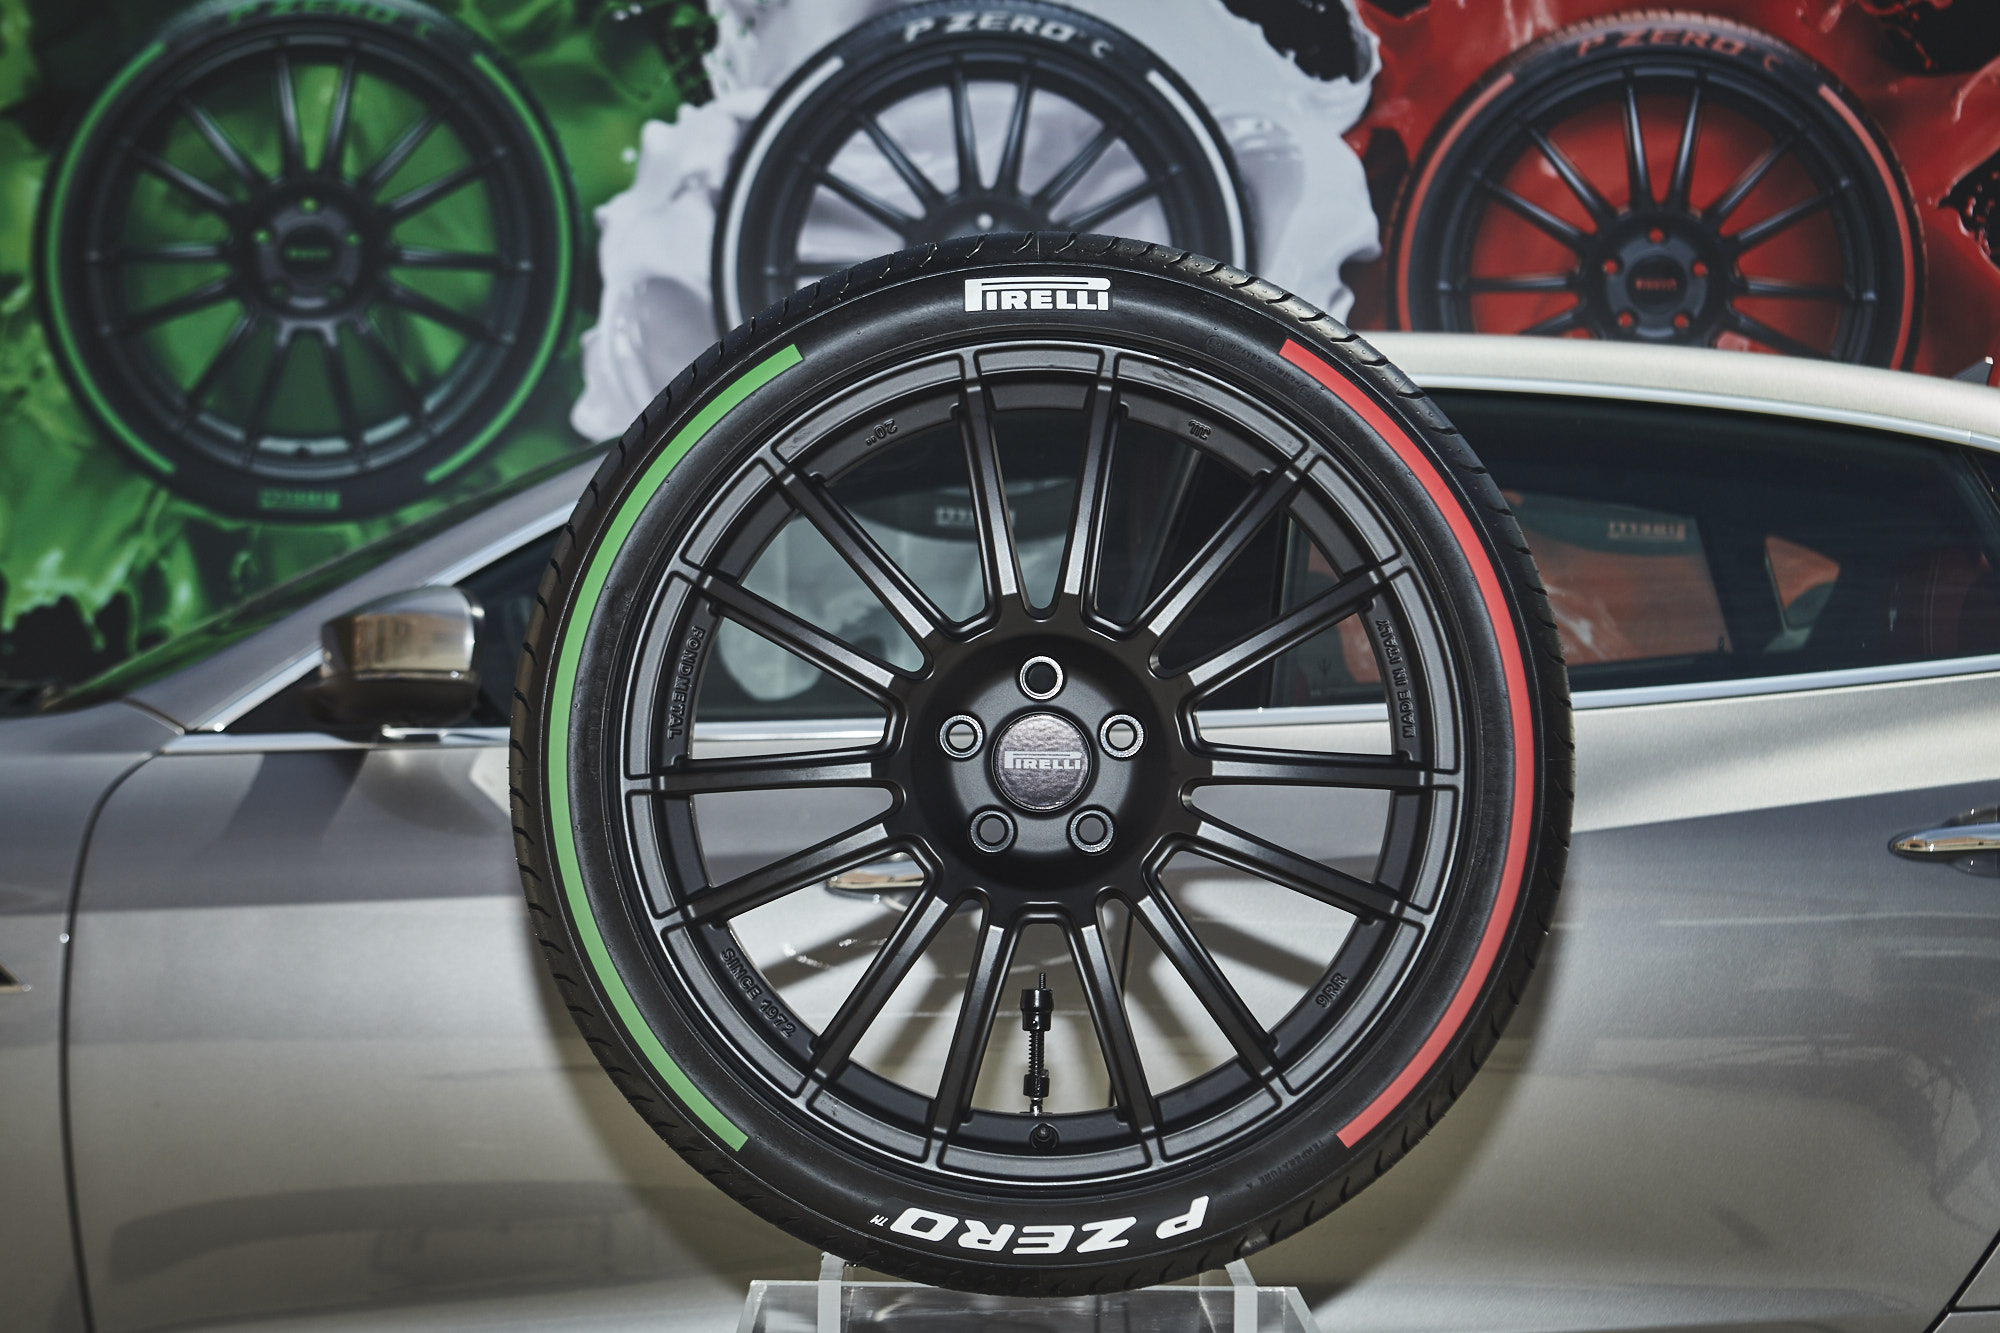 Pirelli pneumatici colorati: l’edizione speciale dei suoi pneumatici P Zero con i colori della bandiera italiana